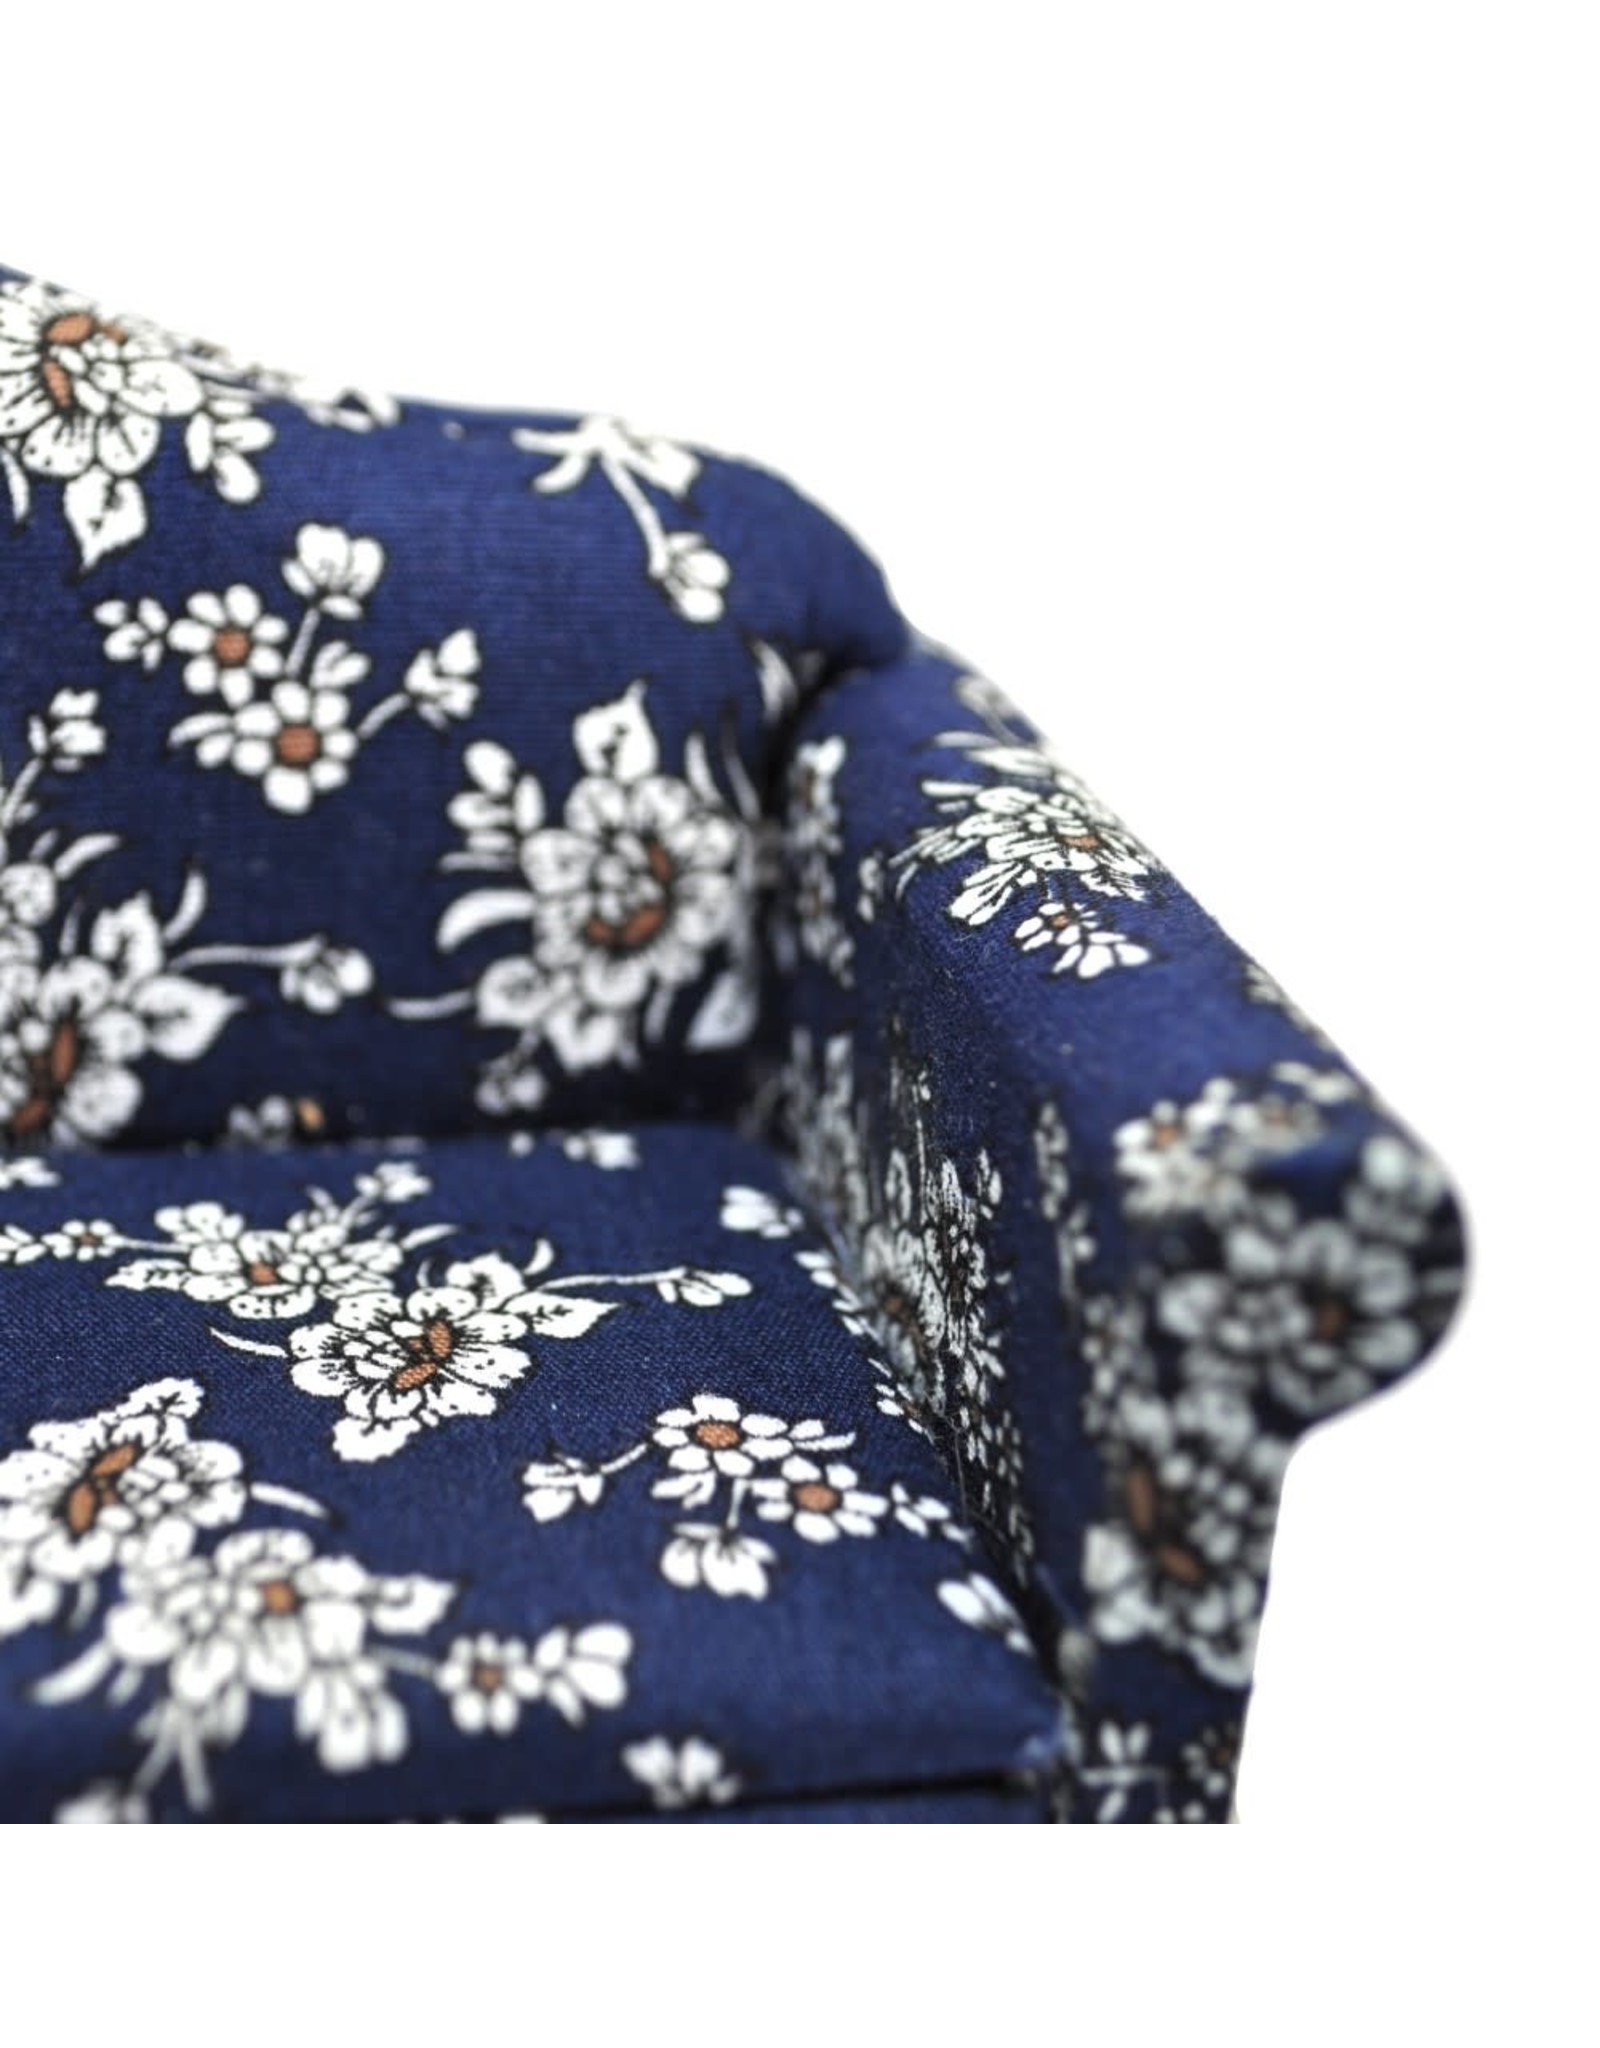 Ensemble canapé et fauteuils bleus fleuris, miniature 1:12